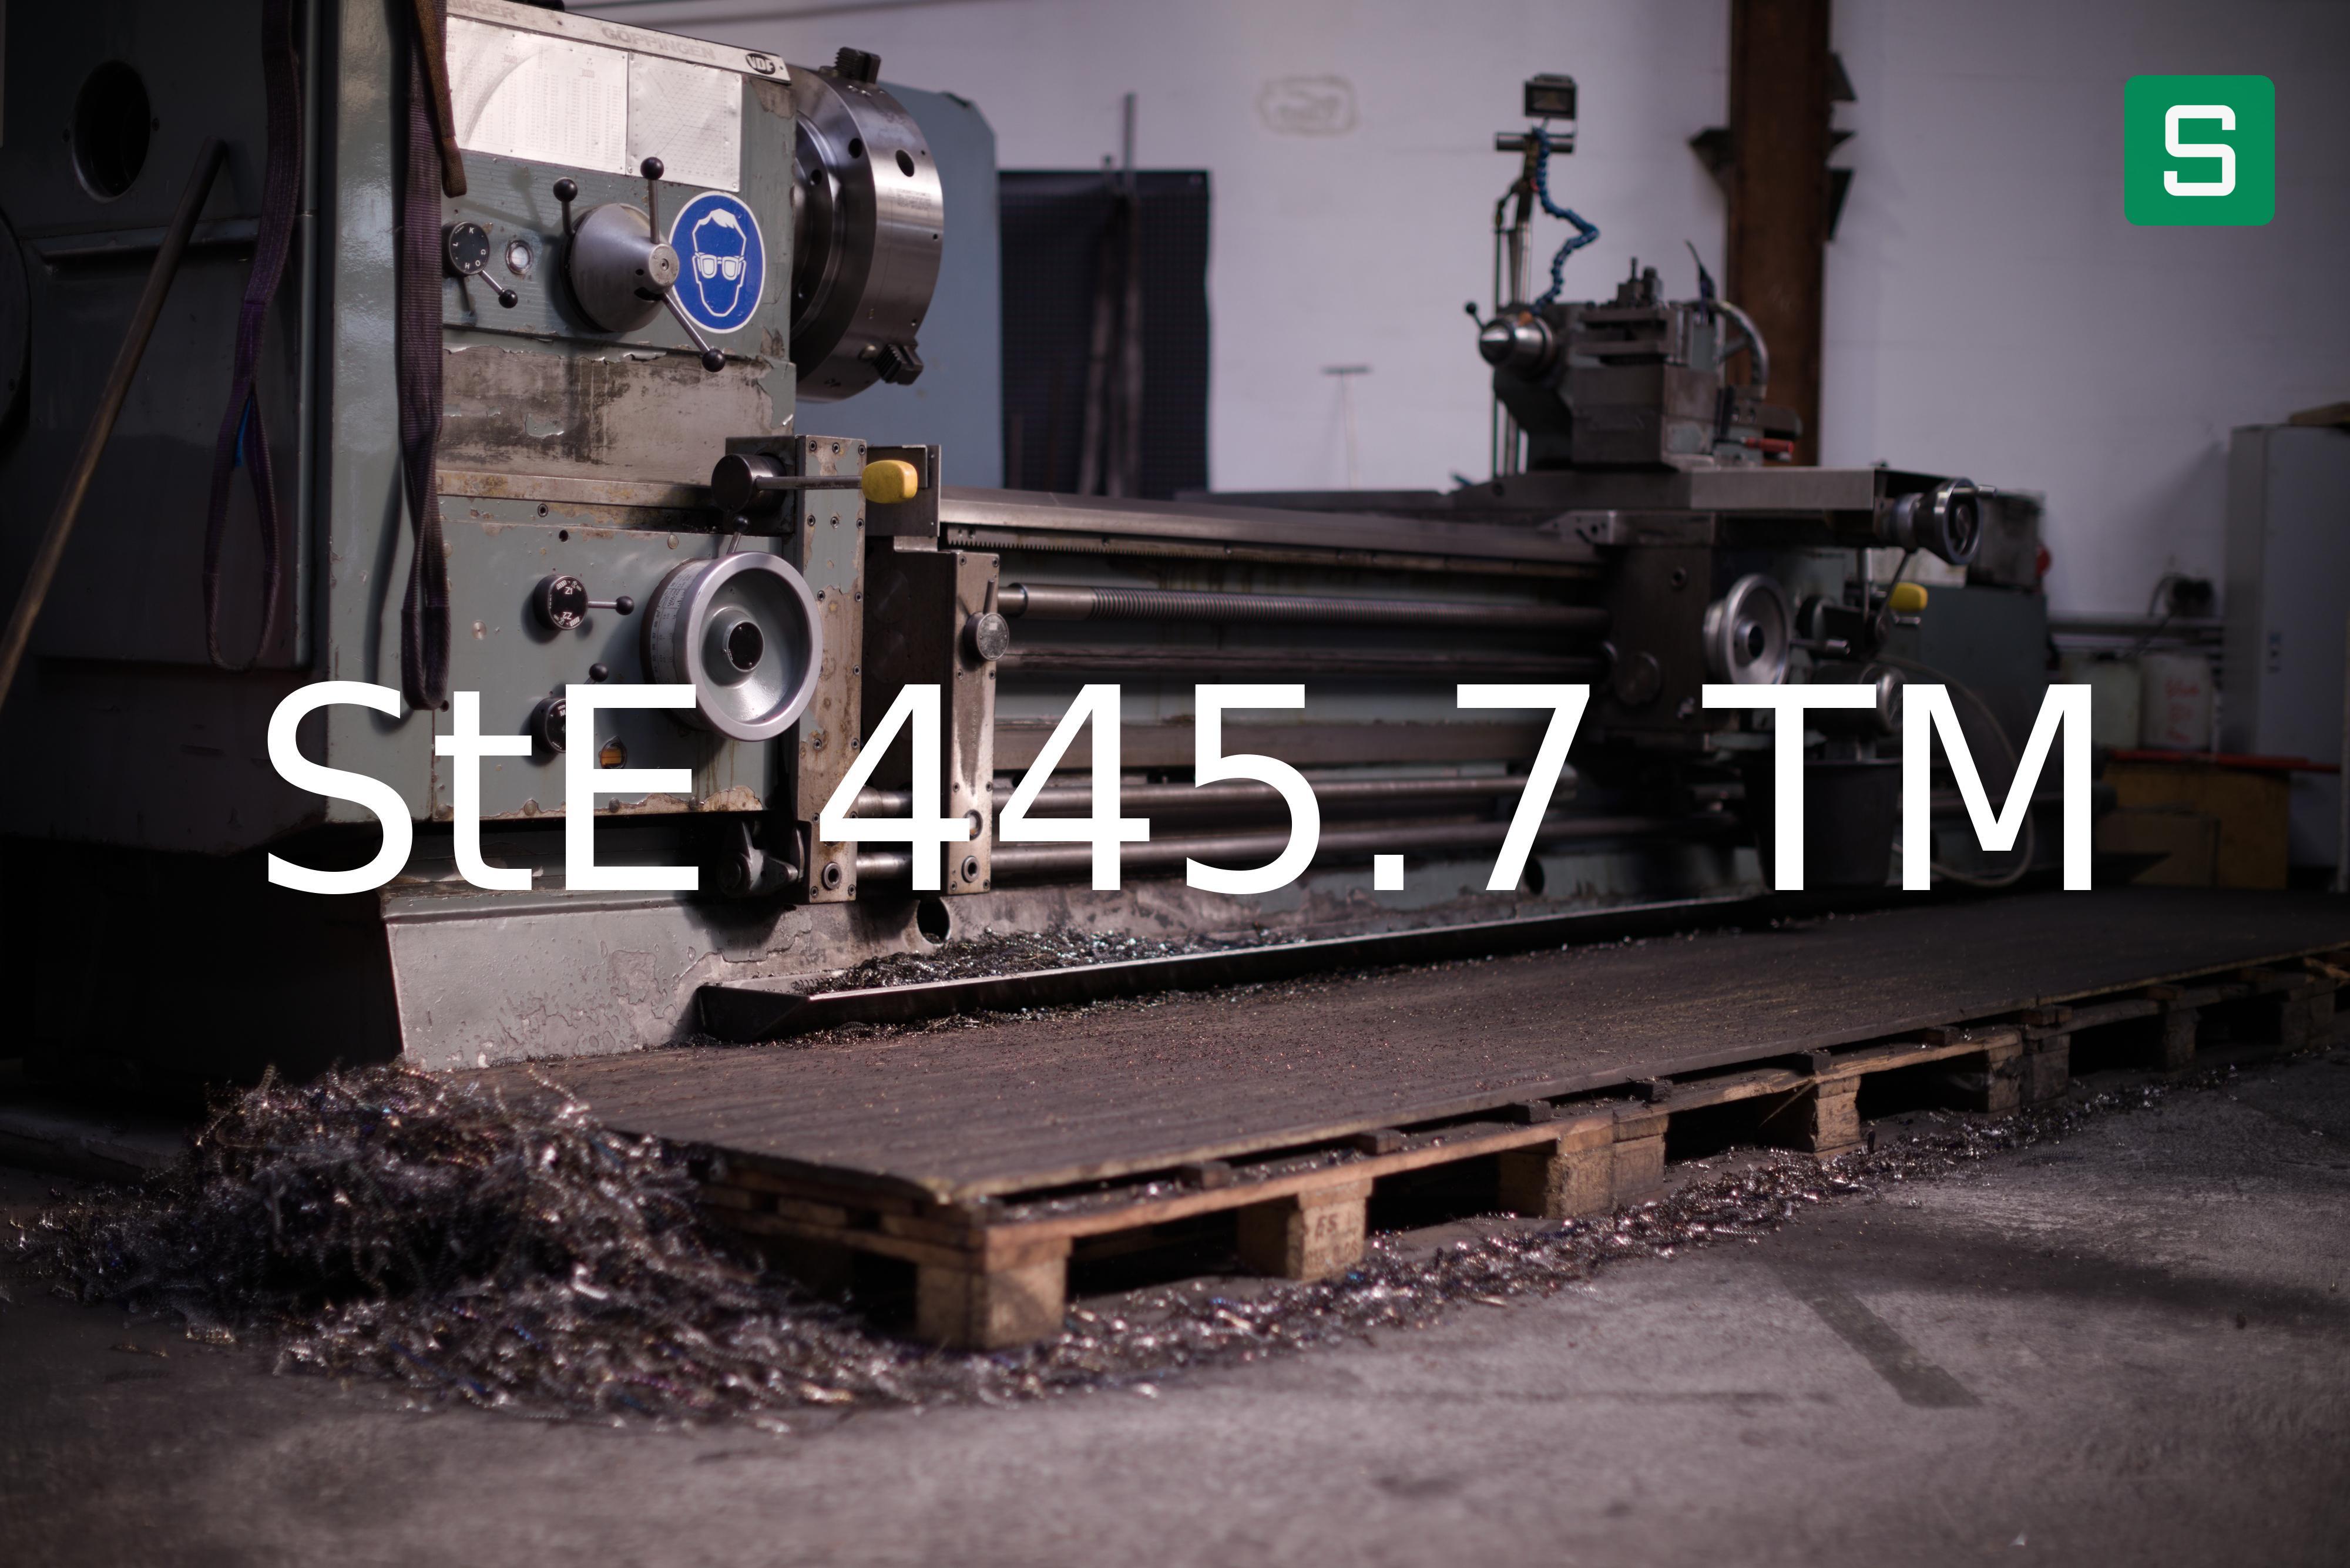 Steel Material: StE 445.7 TM